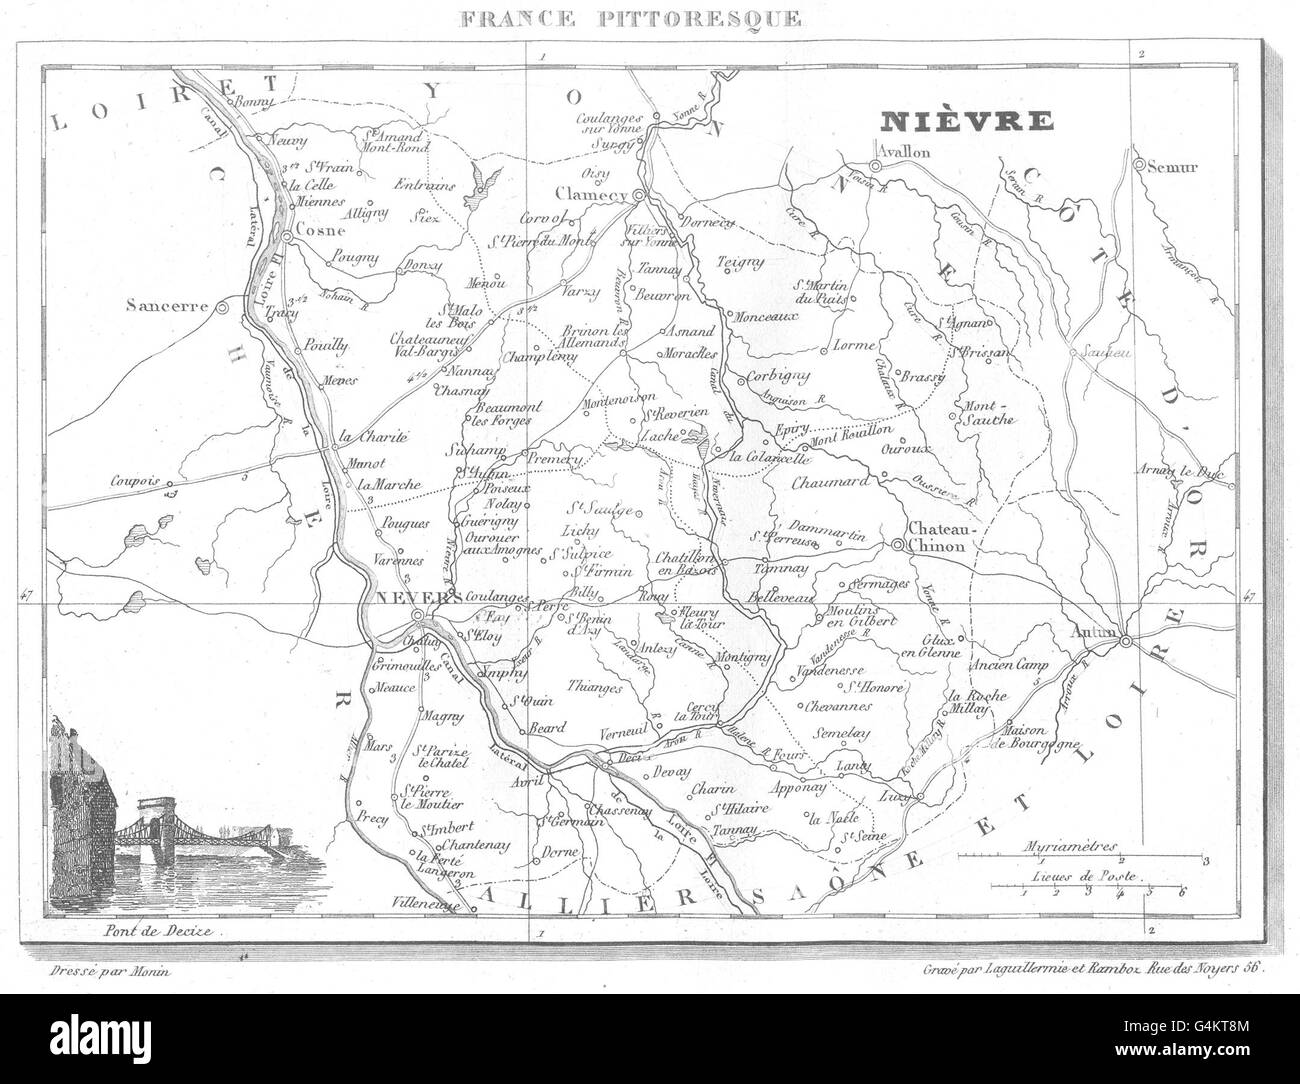 NIÈVRE: Département de la Nièvre, 1835 antique map Stock Photo - Alamy